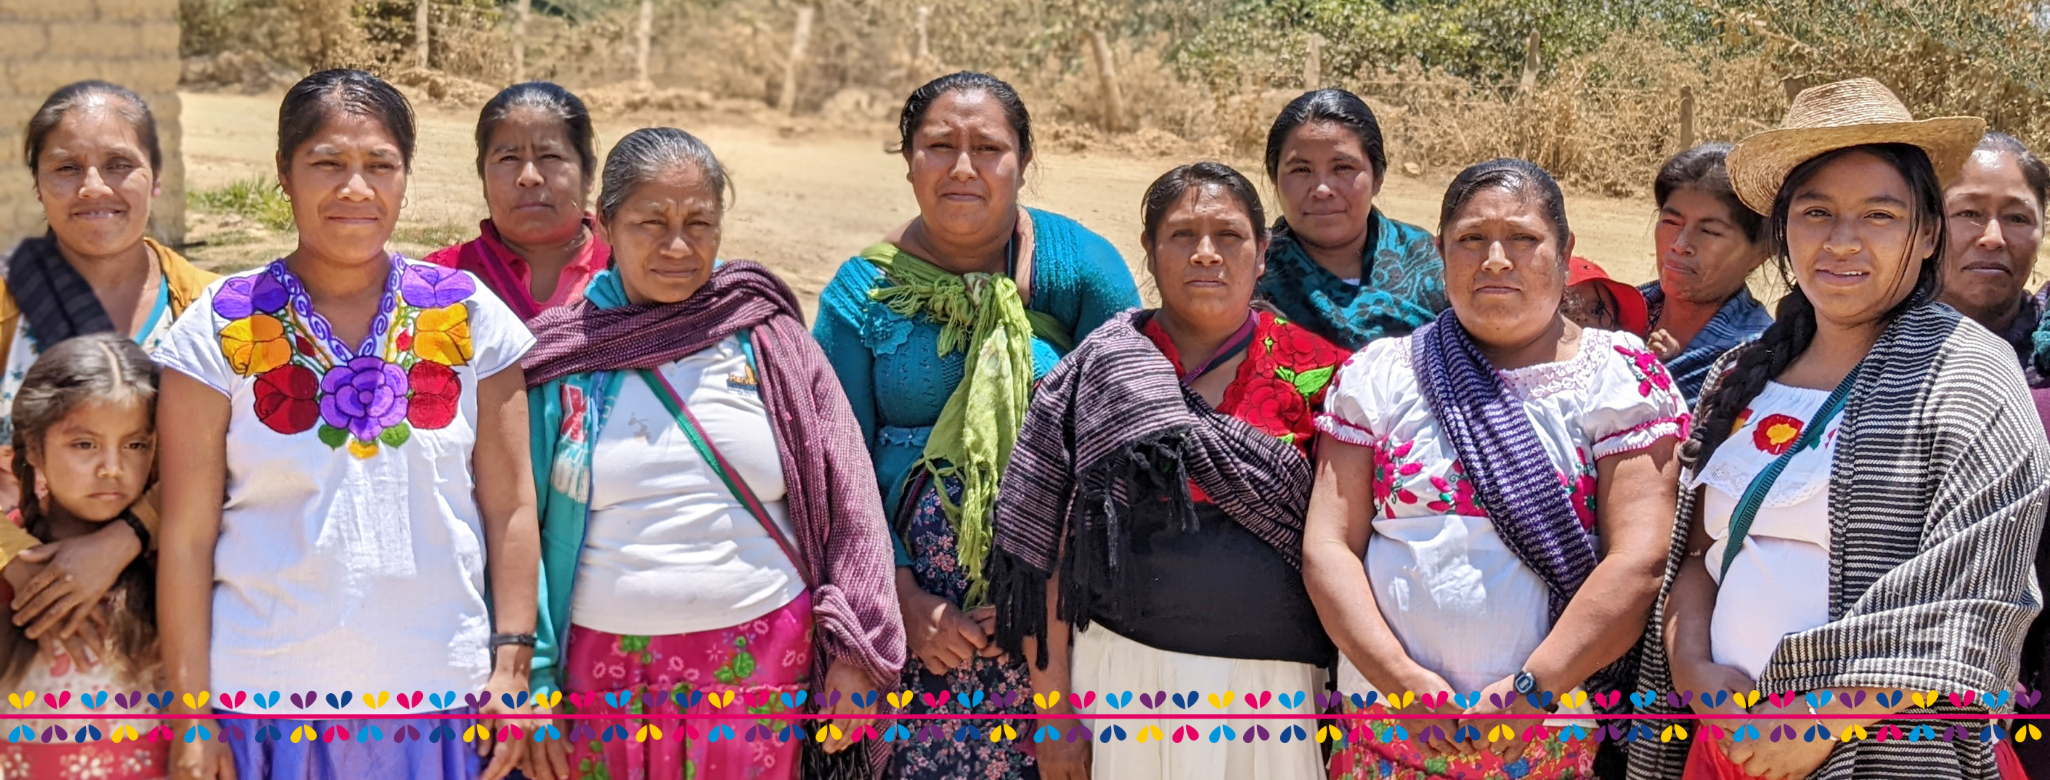 Fundación Pro México indígena: En defensa de los derechos humanos